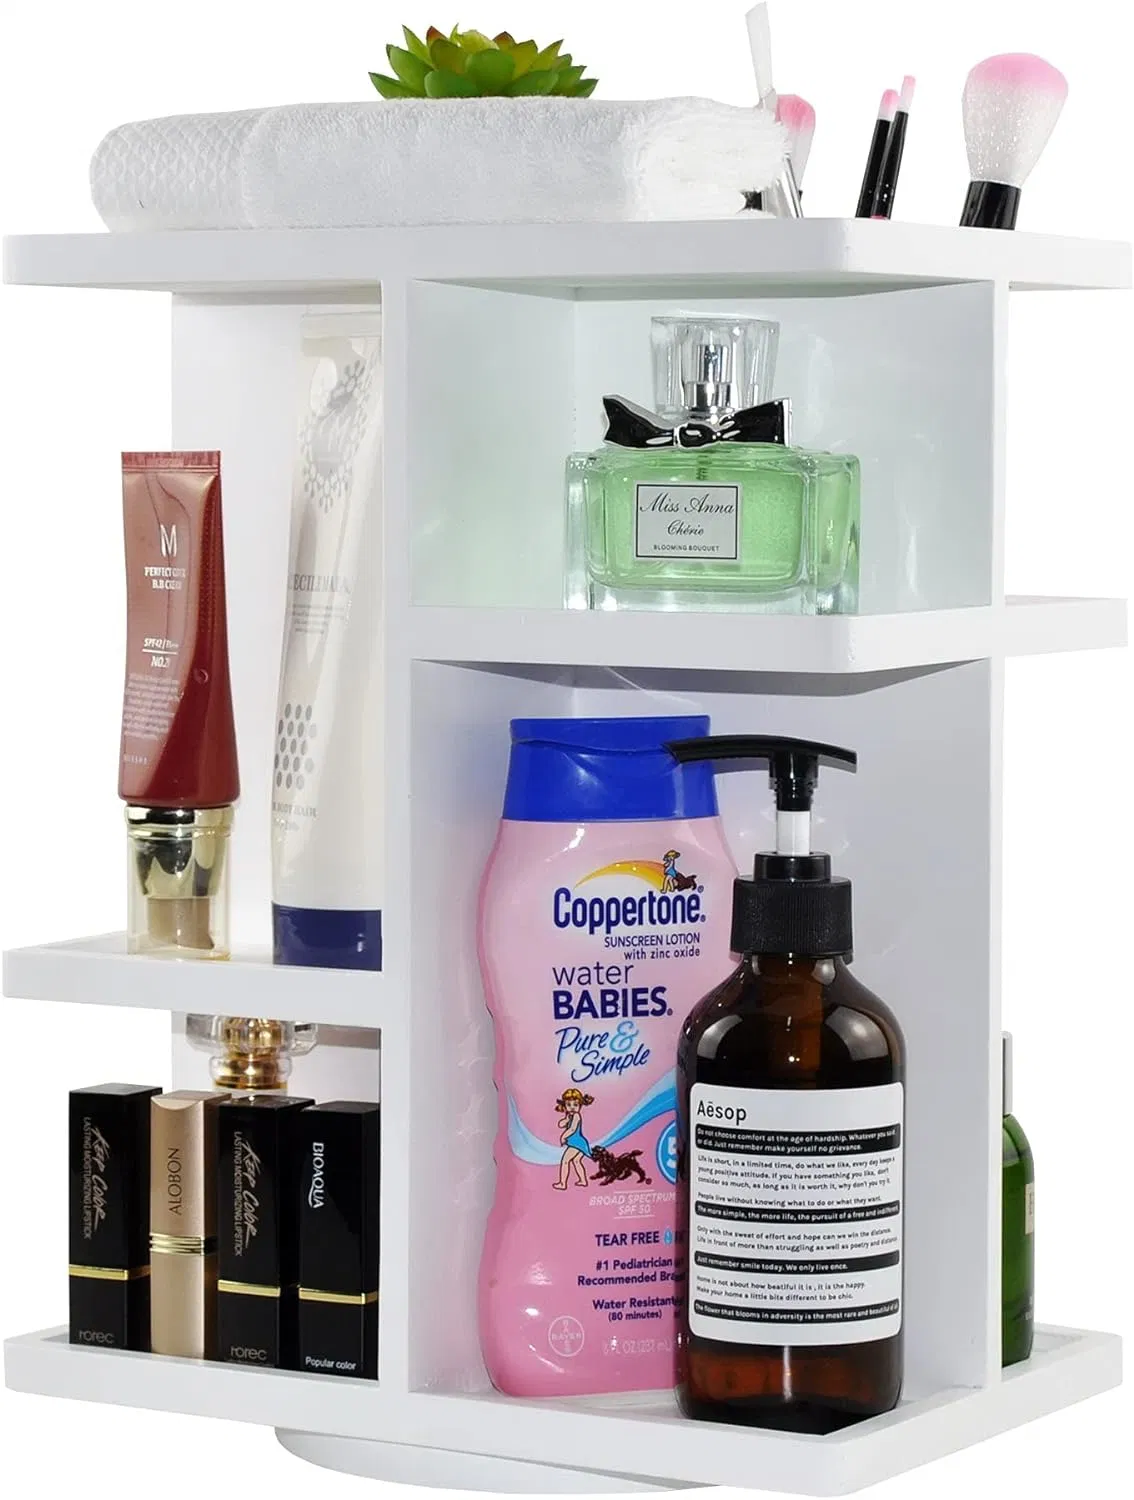 Artigos de toalete cosméticos Vanity Desk Bedroom Prateleira de armazenamento do armário